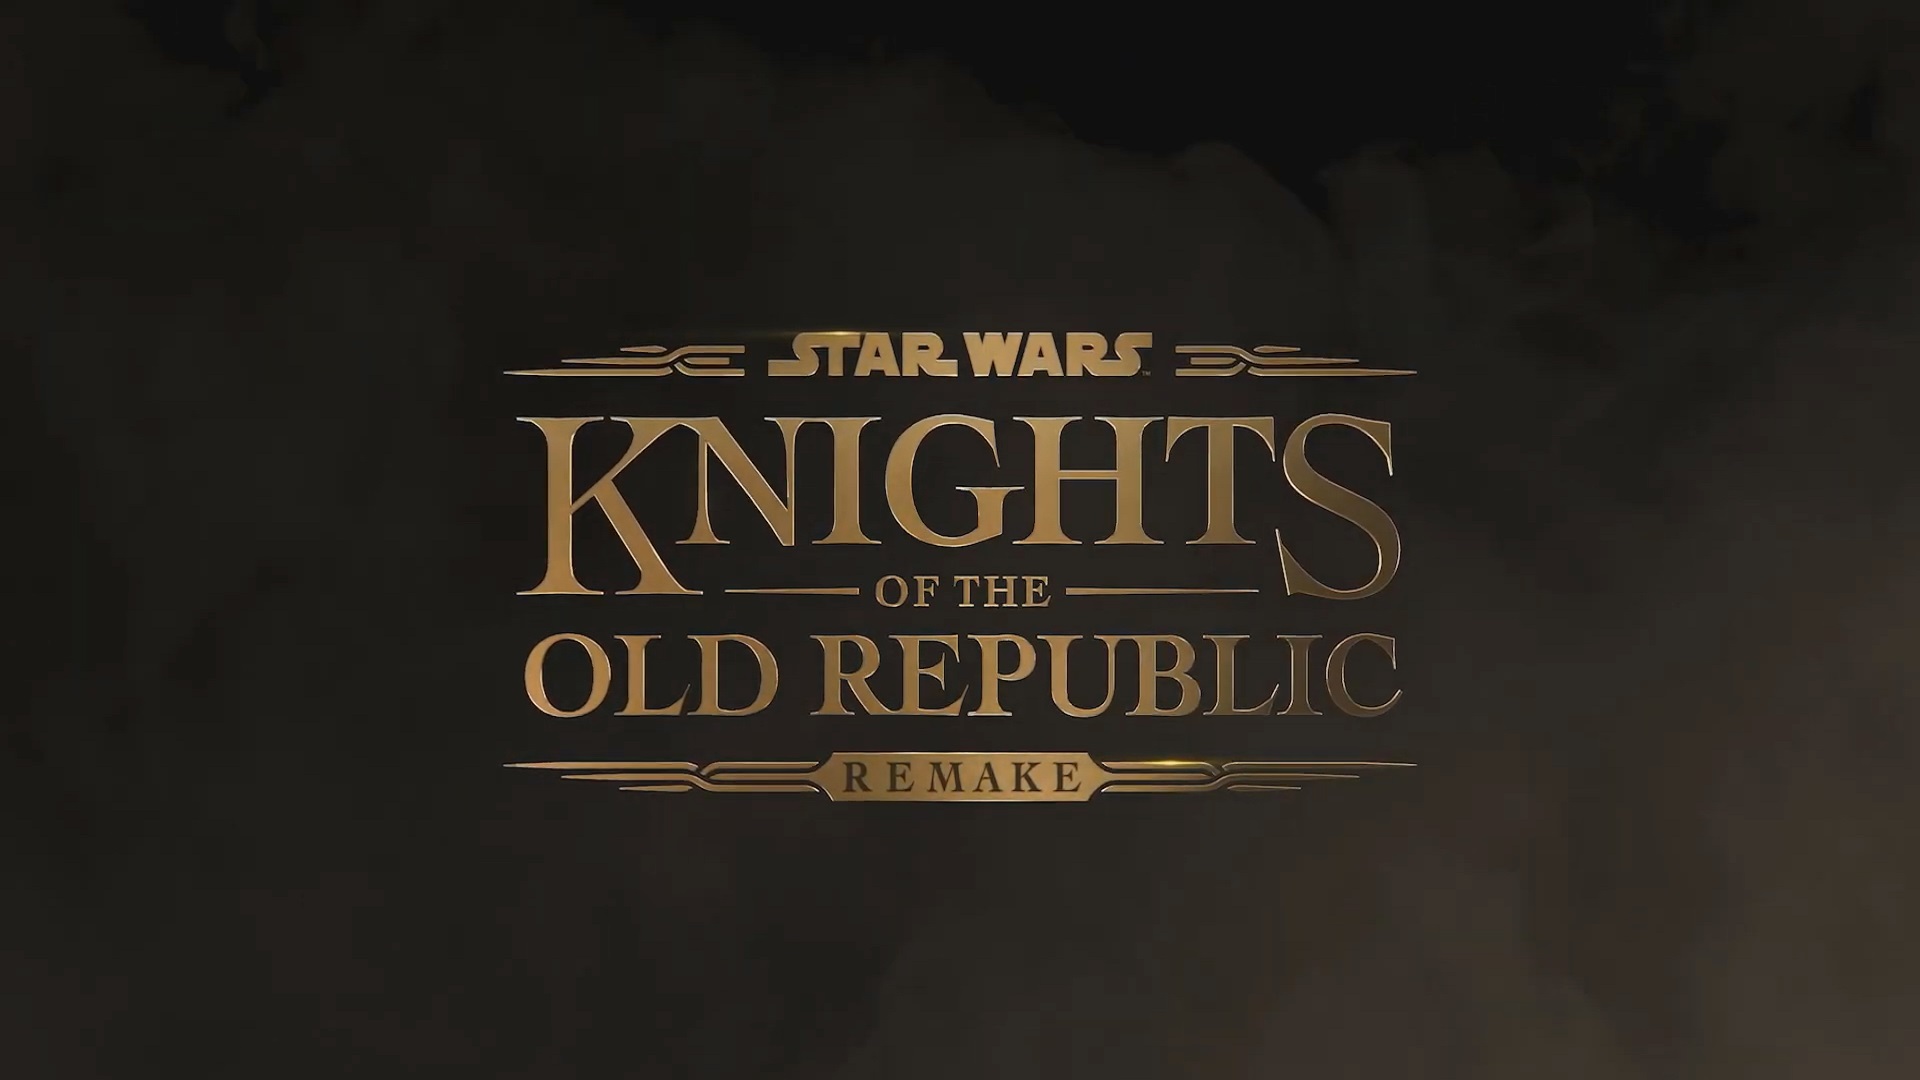 تغییر استودیوی سازنده بازی ریمیک Star Wars Knights of the Old Republic 